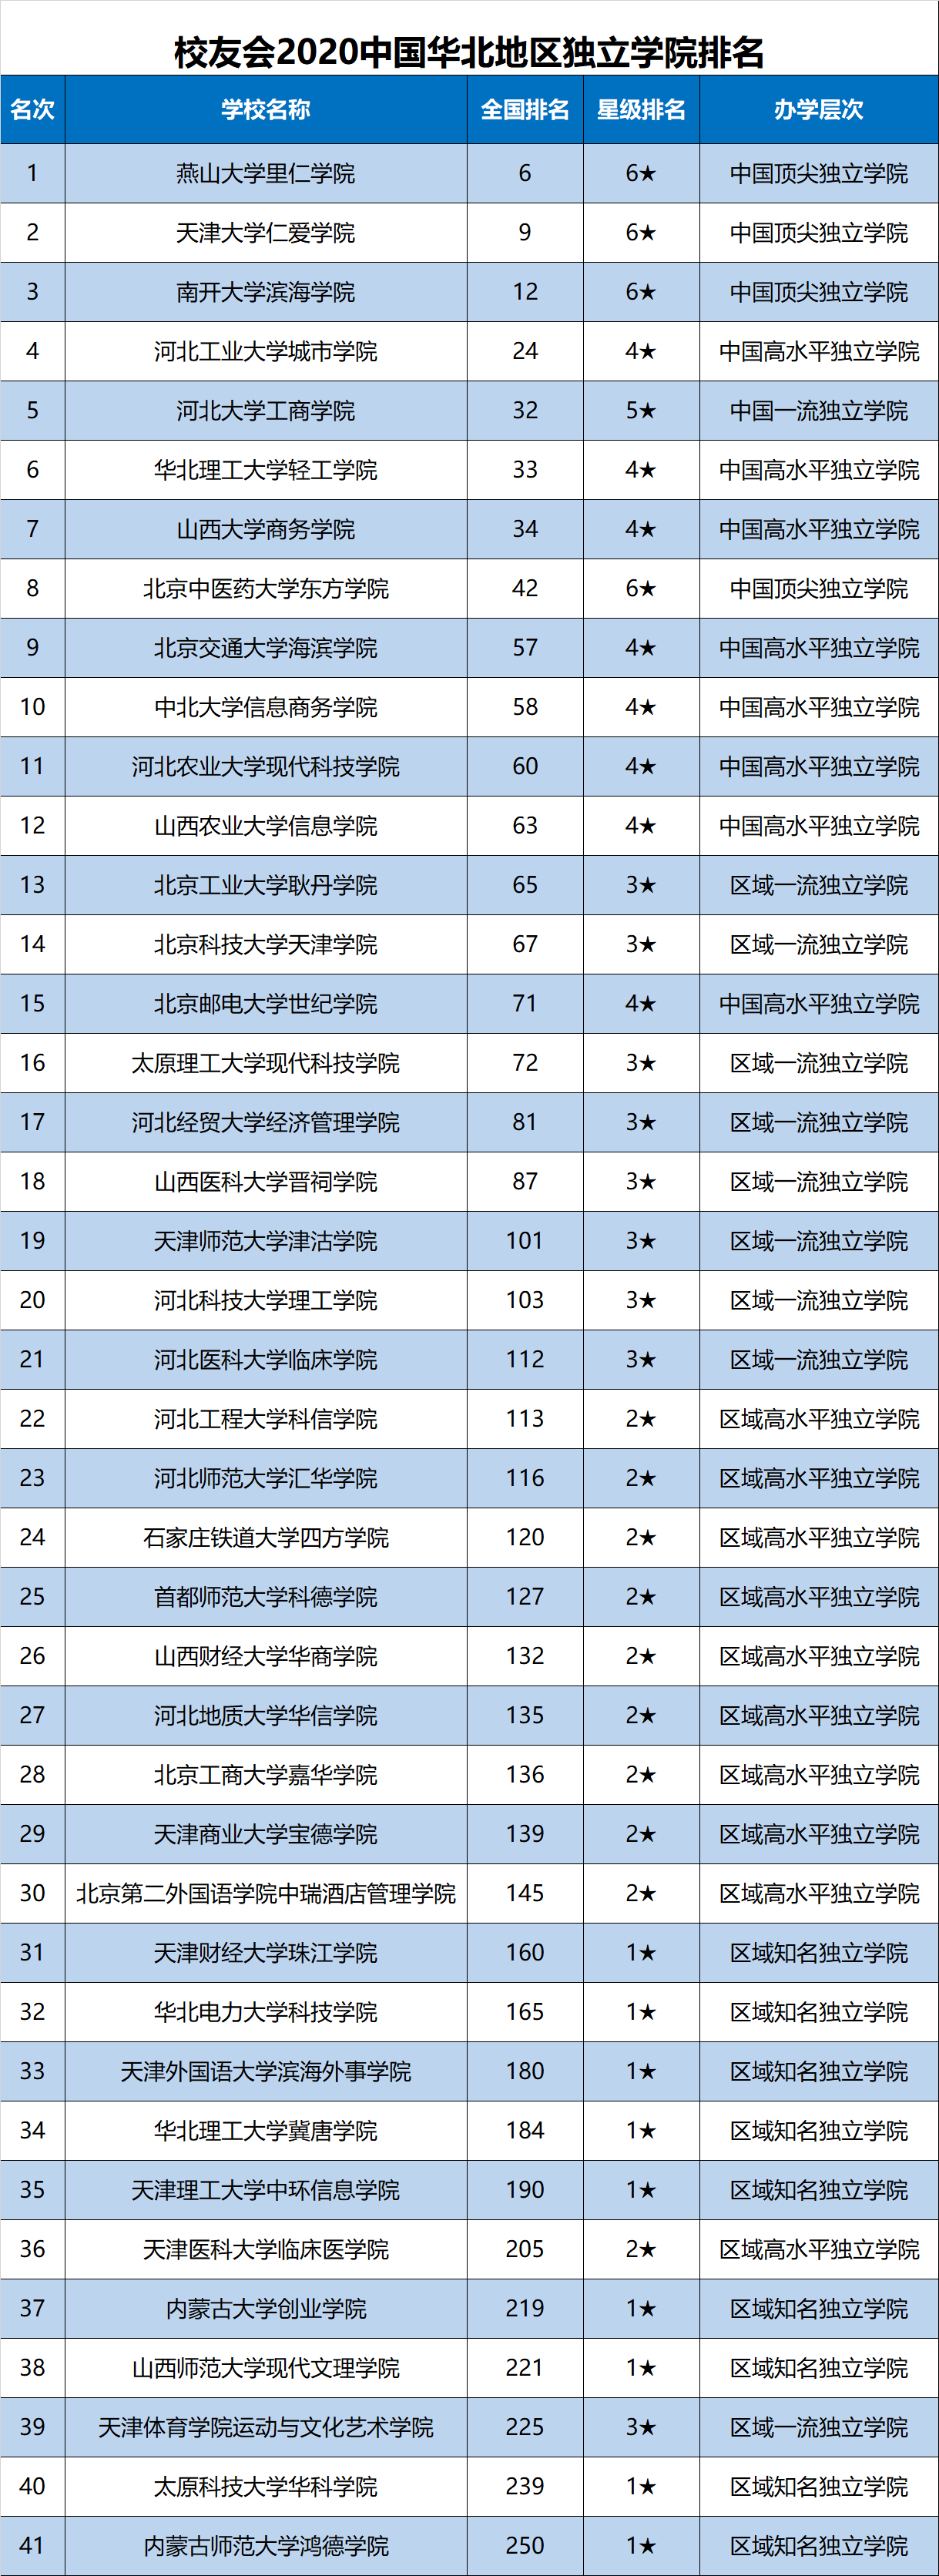 燕山大学2020qs排名_2019-2020燕山大学排名_全国第76名_河北省第1名(最新